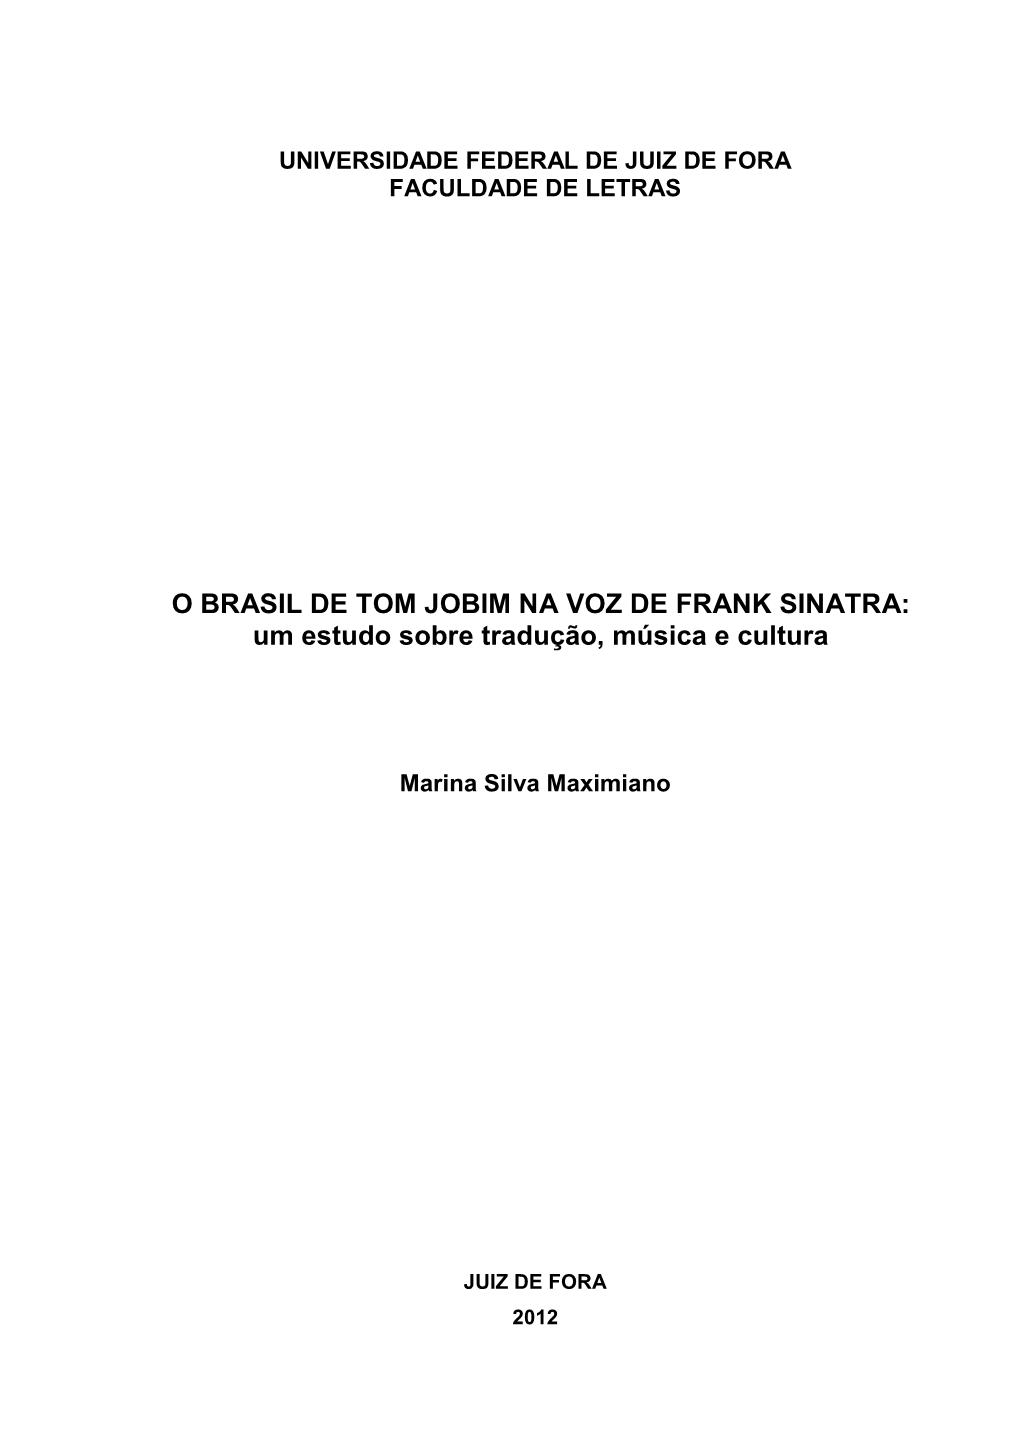 O BRASIL DE TOM JOBIM NA VOZ DE FRANK SINATRA: Um Estudo Sobre Tradução, Música E Cultura